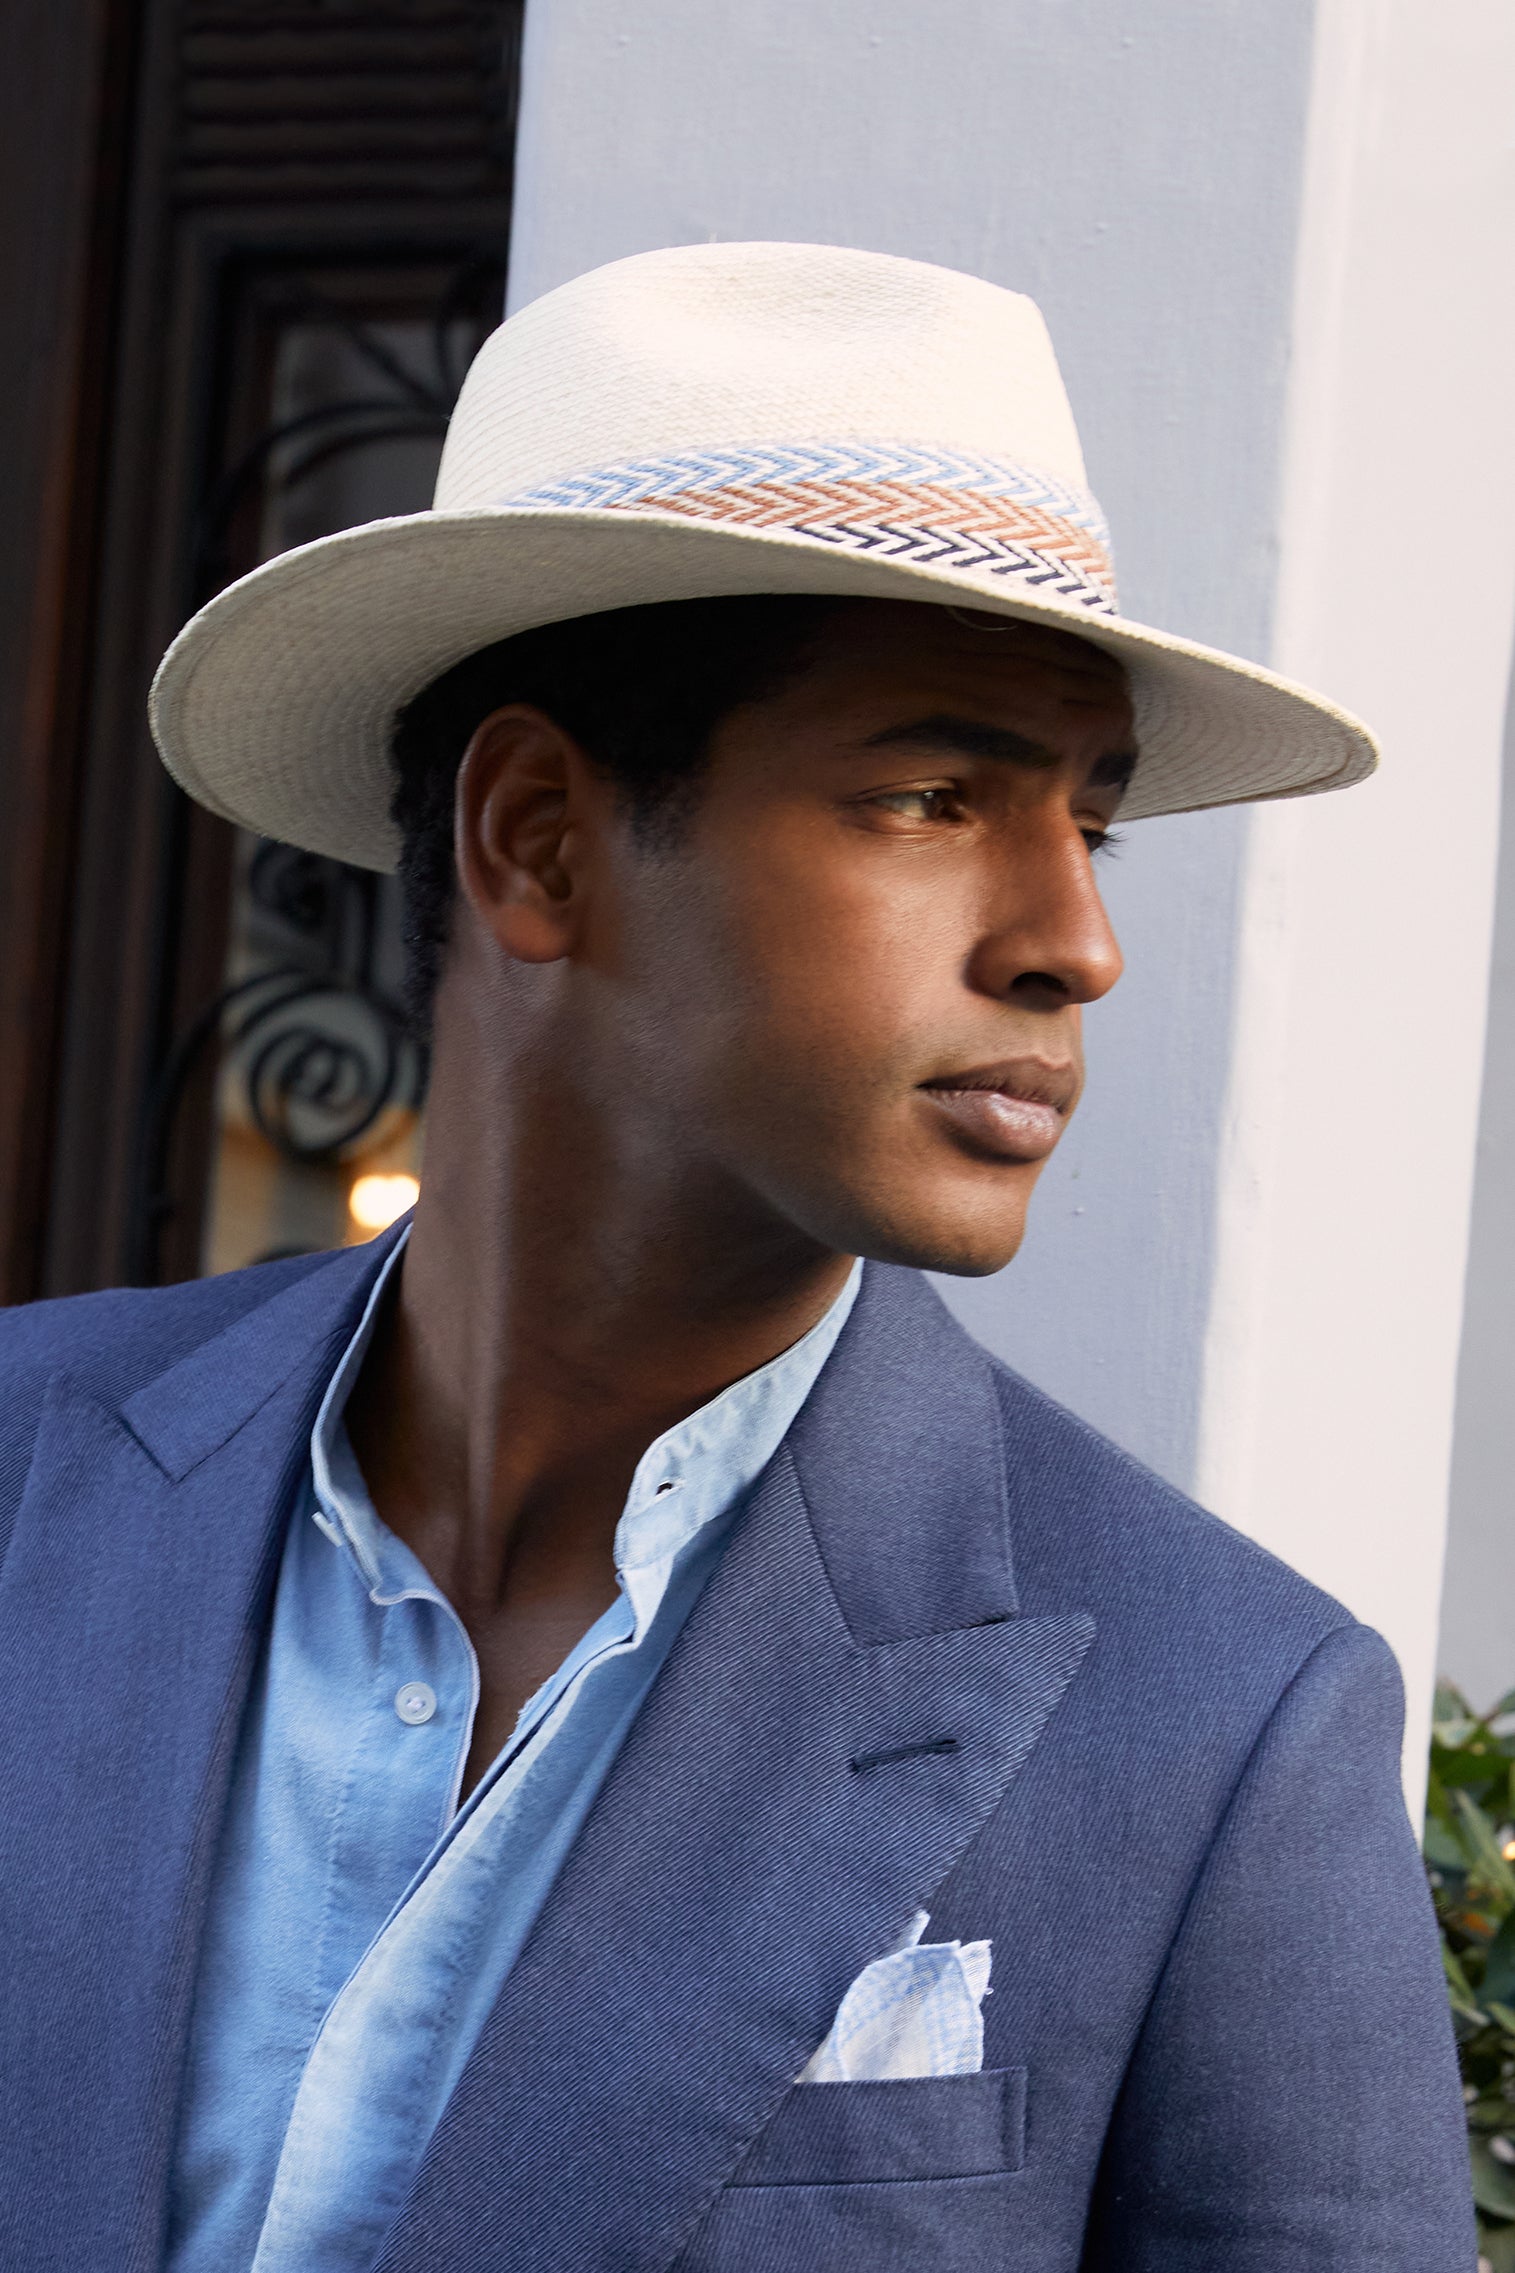 Mens Hats - Luxury Hats for Men - Lock & Co. Hatters UK